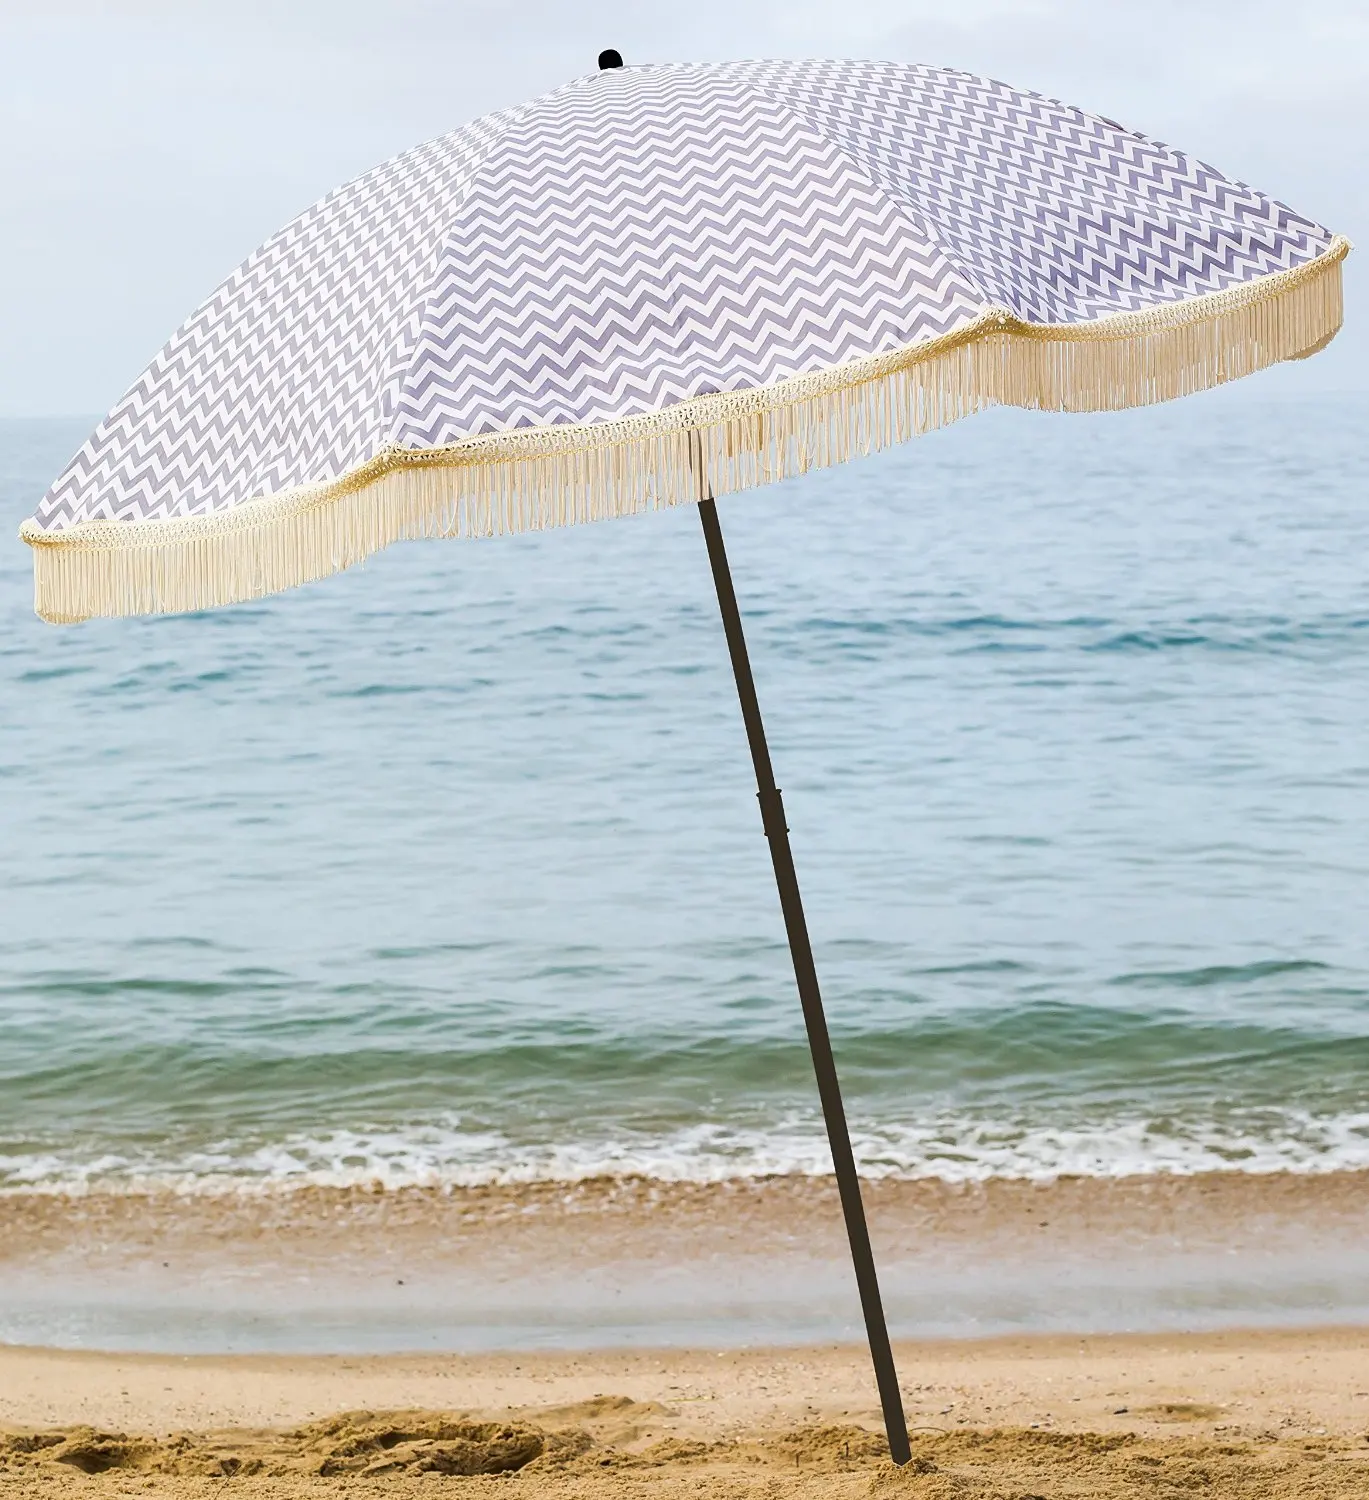 зонт от солнца на пляже